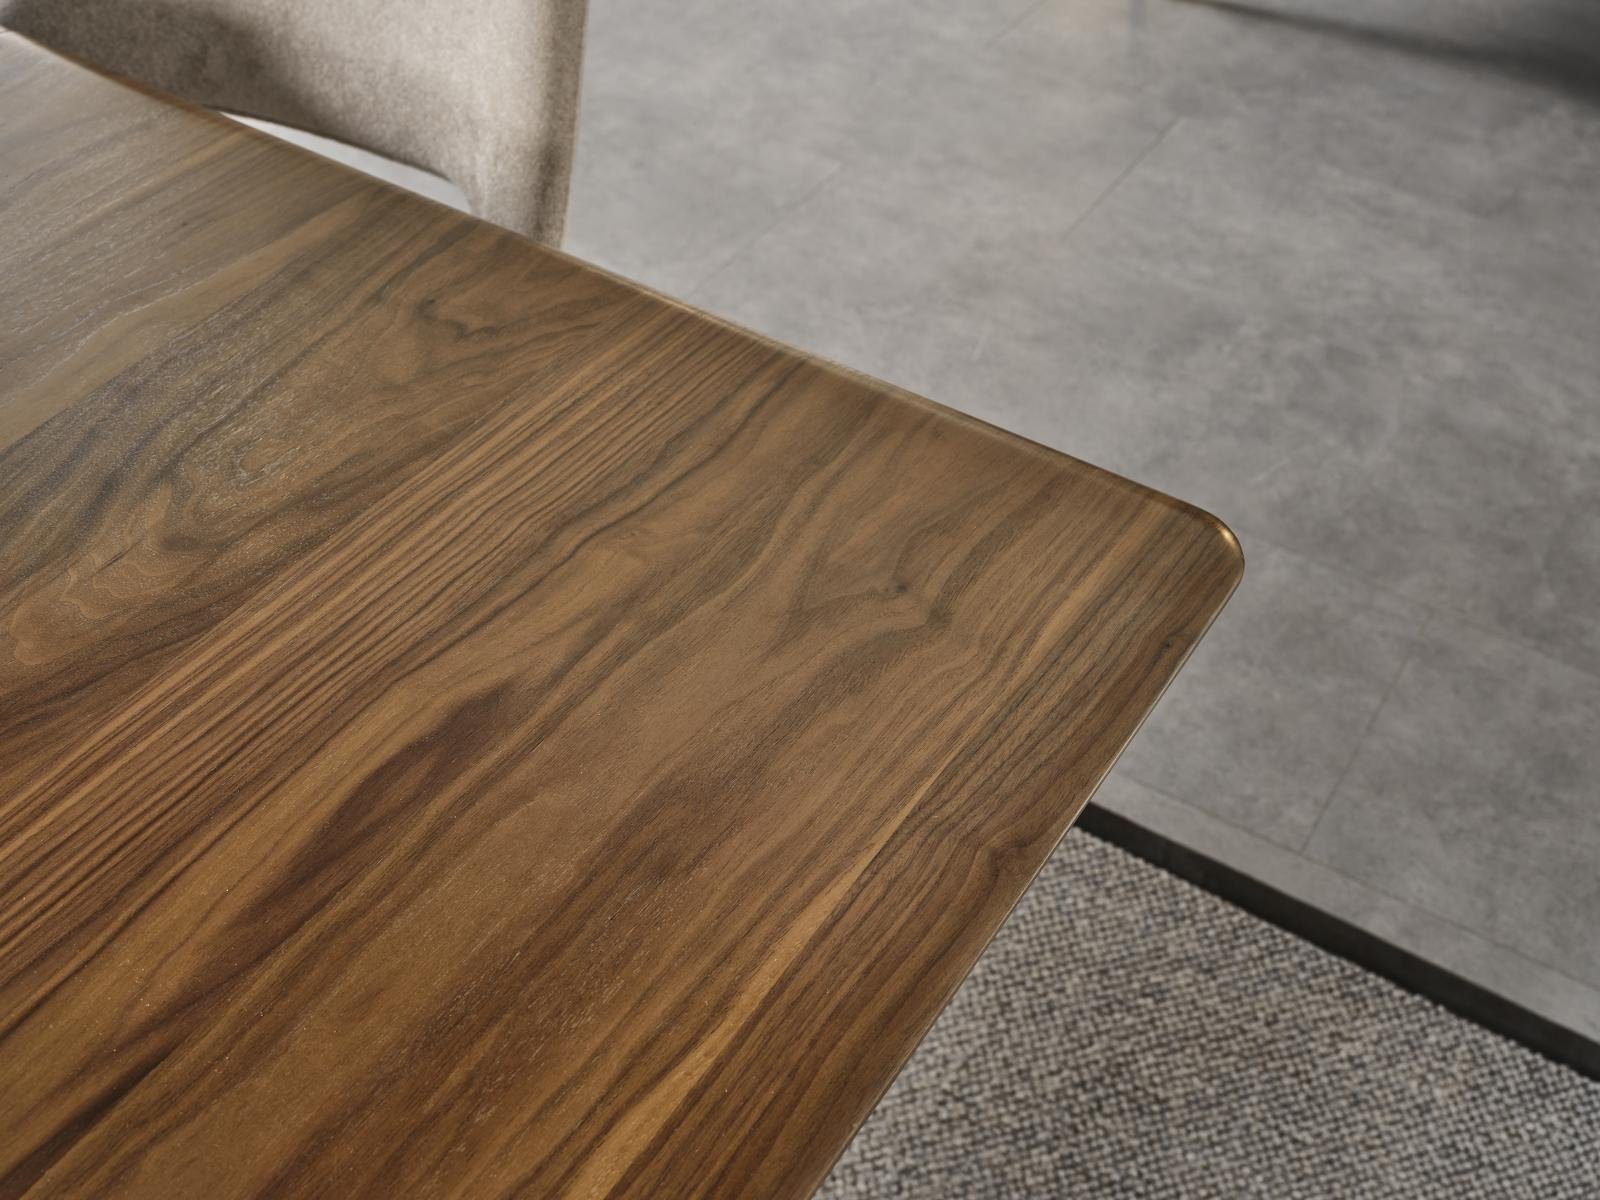 Stil Esstisch Tische Tisch Esszimmer Holztisch JVmoebel Moderner Luxus Holz Möbel